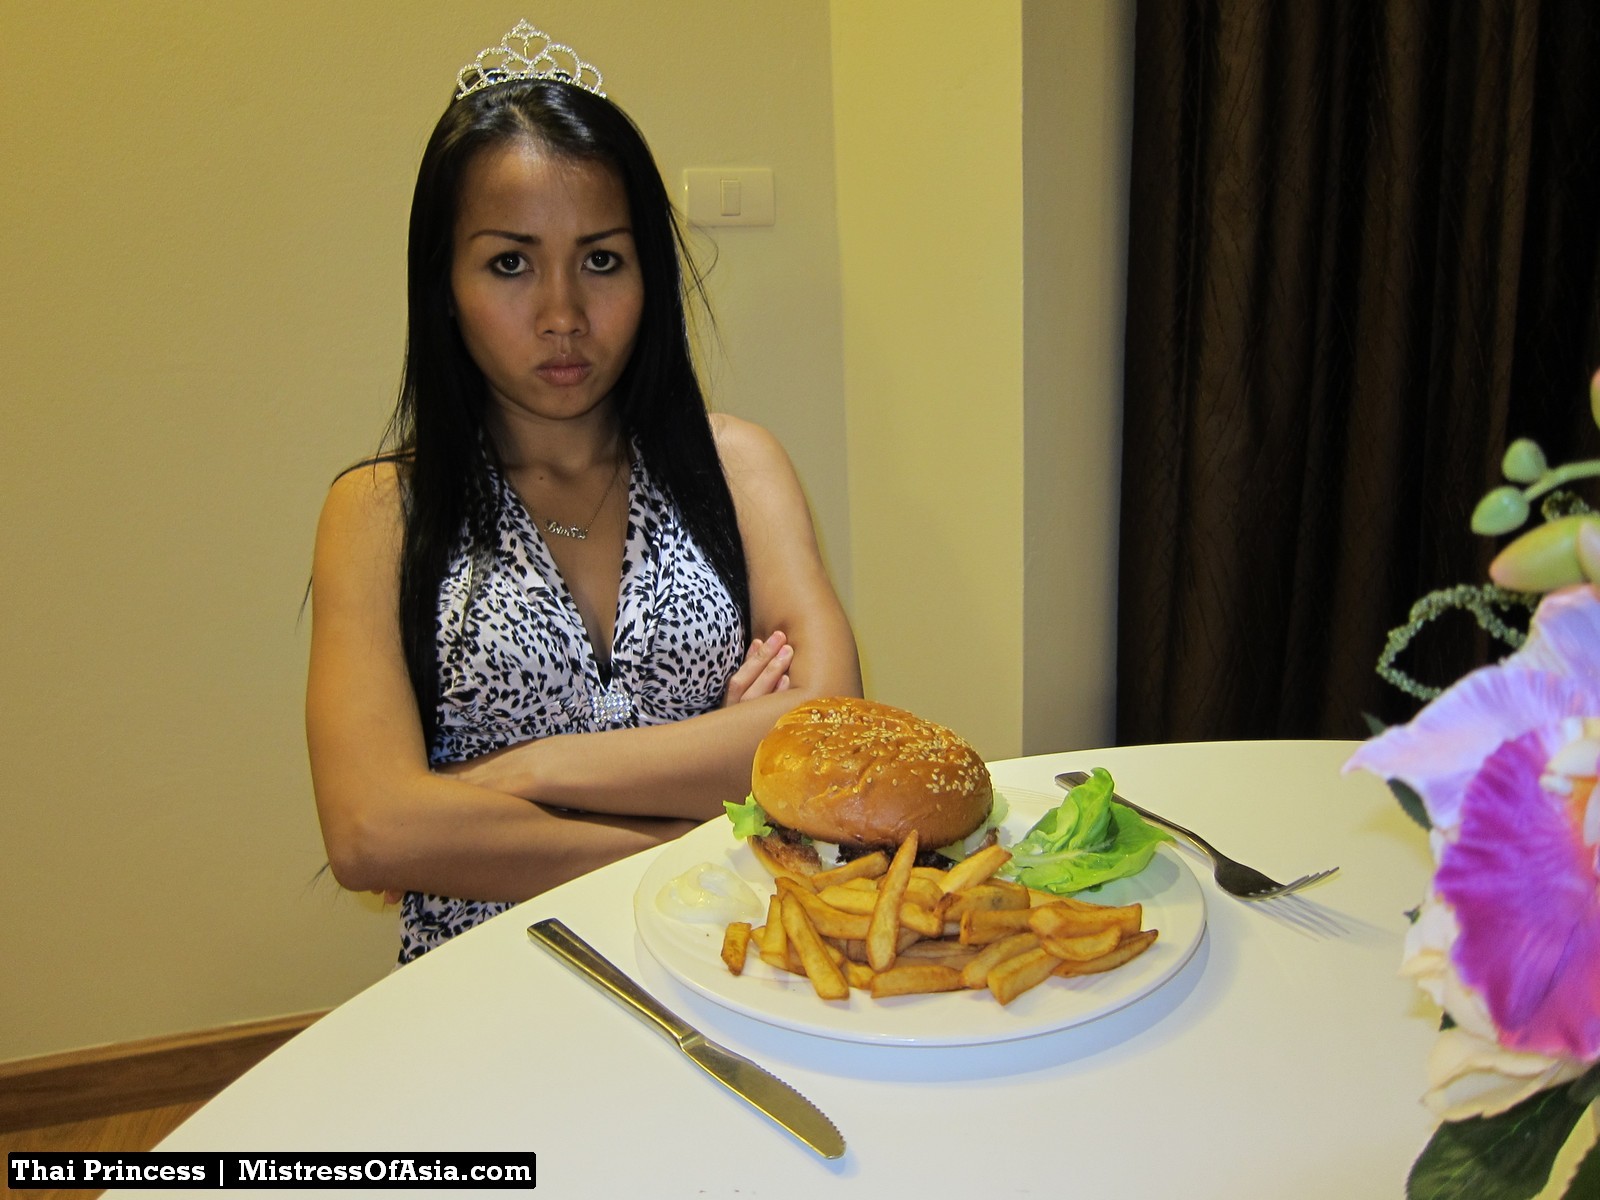 Princesa tailandesa comiendo hamburguesa
 #69740269